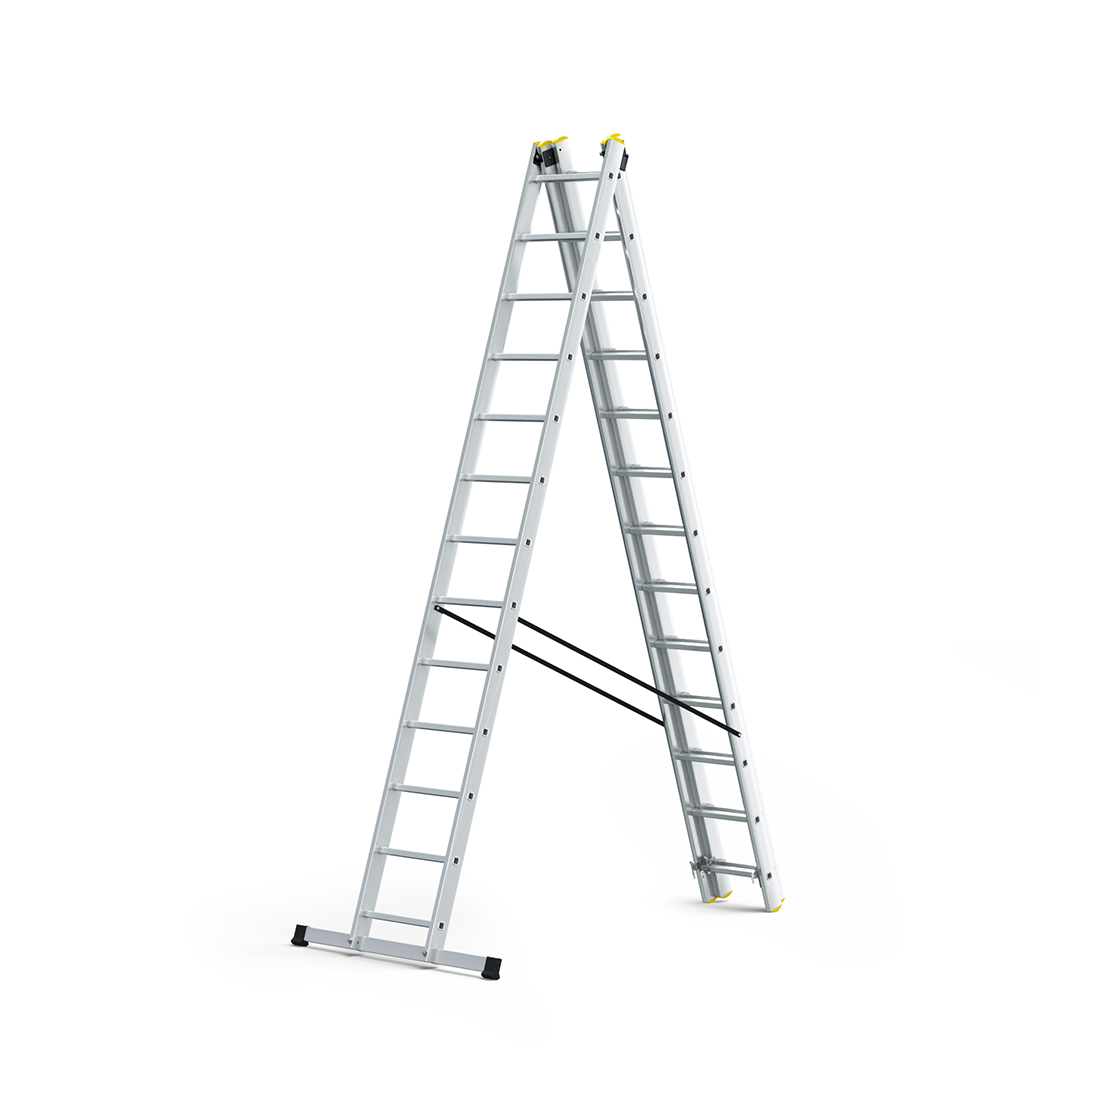 Escalera Reach Flexi Pro Tipo IA de 28 pies, combinación de aluminio, 3 secciones - 330 lbs. Capacidad de carga